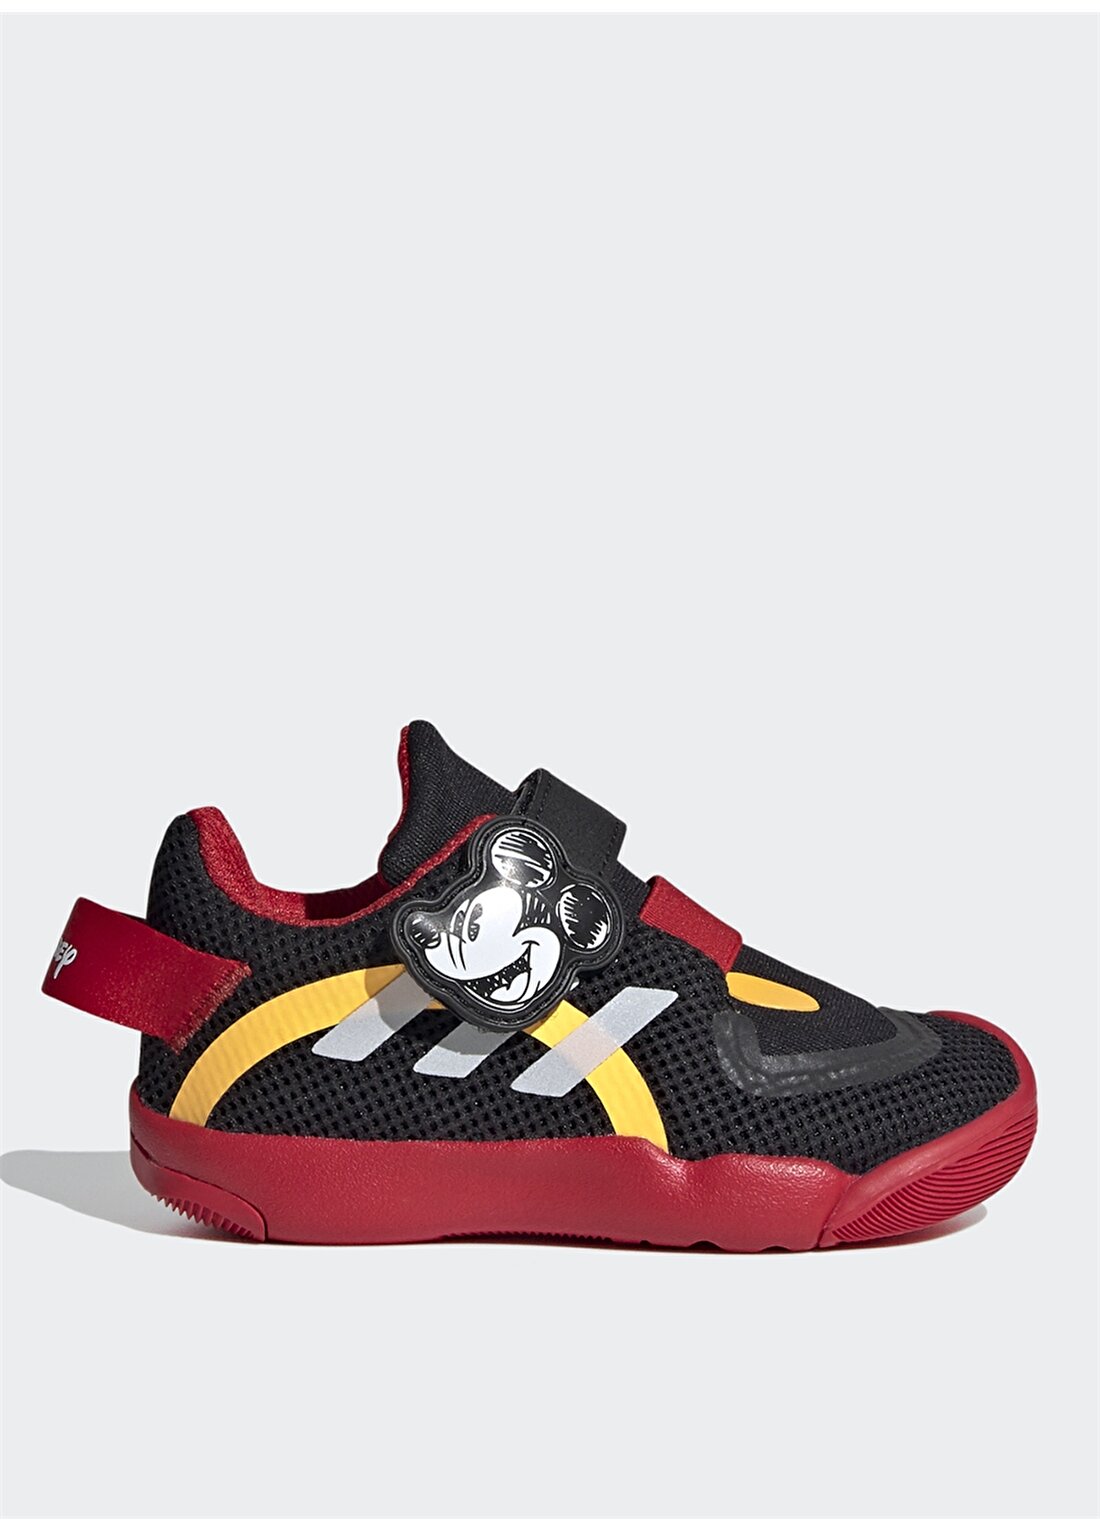 Adidas Erkek Çocuk Siyah-Kırmızı Yürüyüş Ayakkabısı